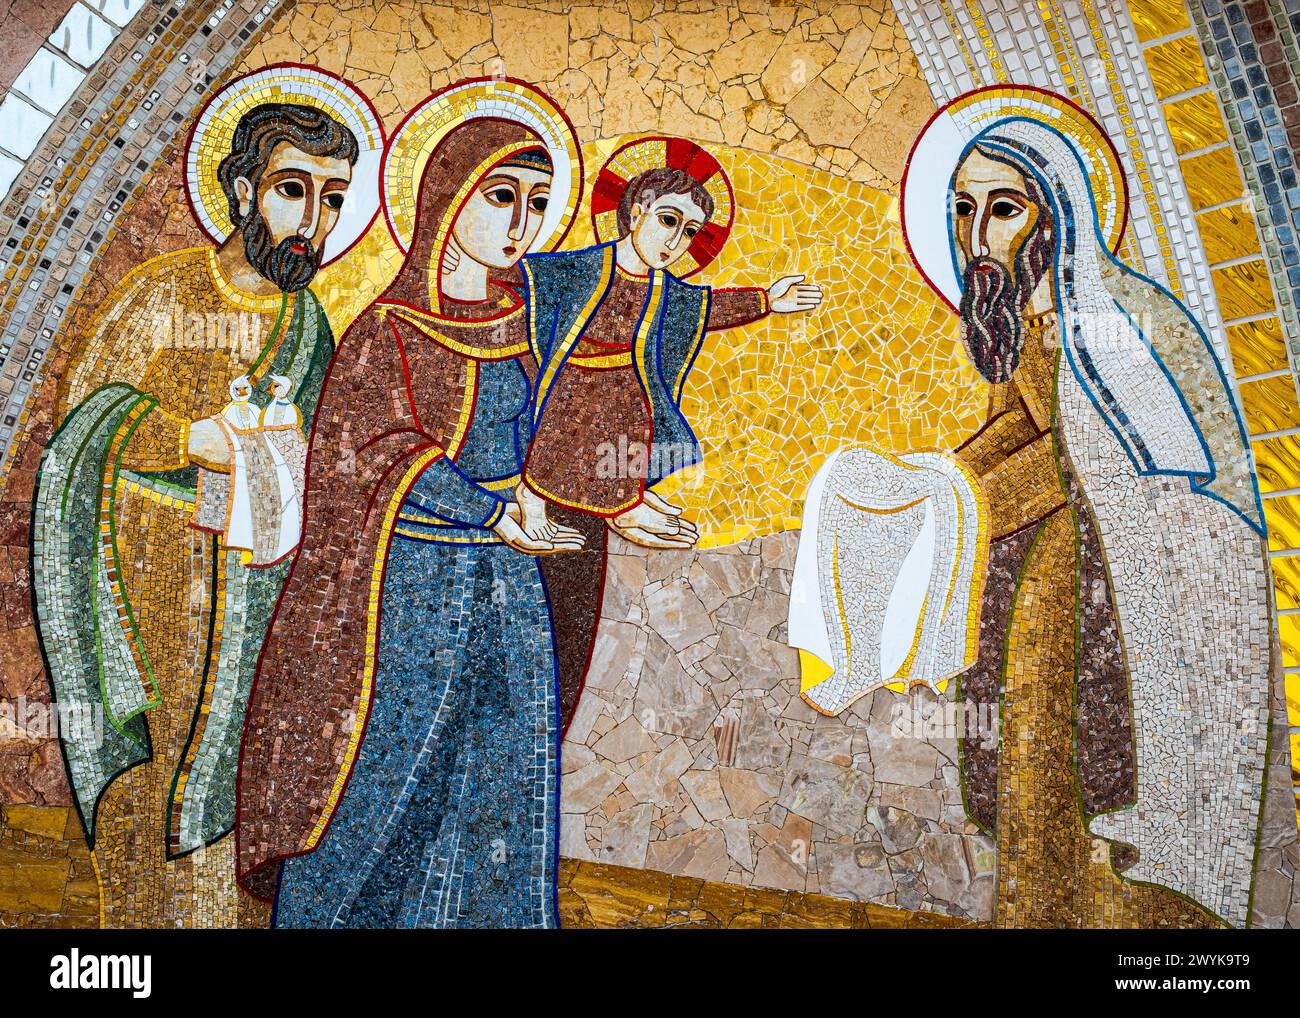 Eines der wunderschön gefertigten Mosaike in der Basilika des Nationalheiligtums der Heiligen Jungfrau von Ta' Pinu in Gozo, Malta. Stockfoto